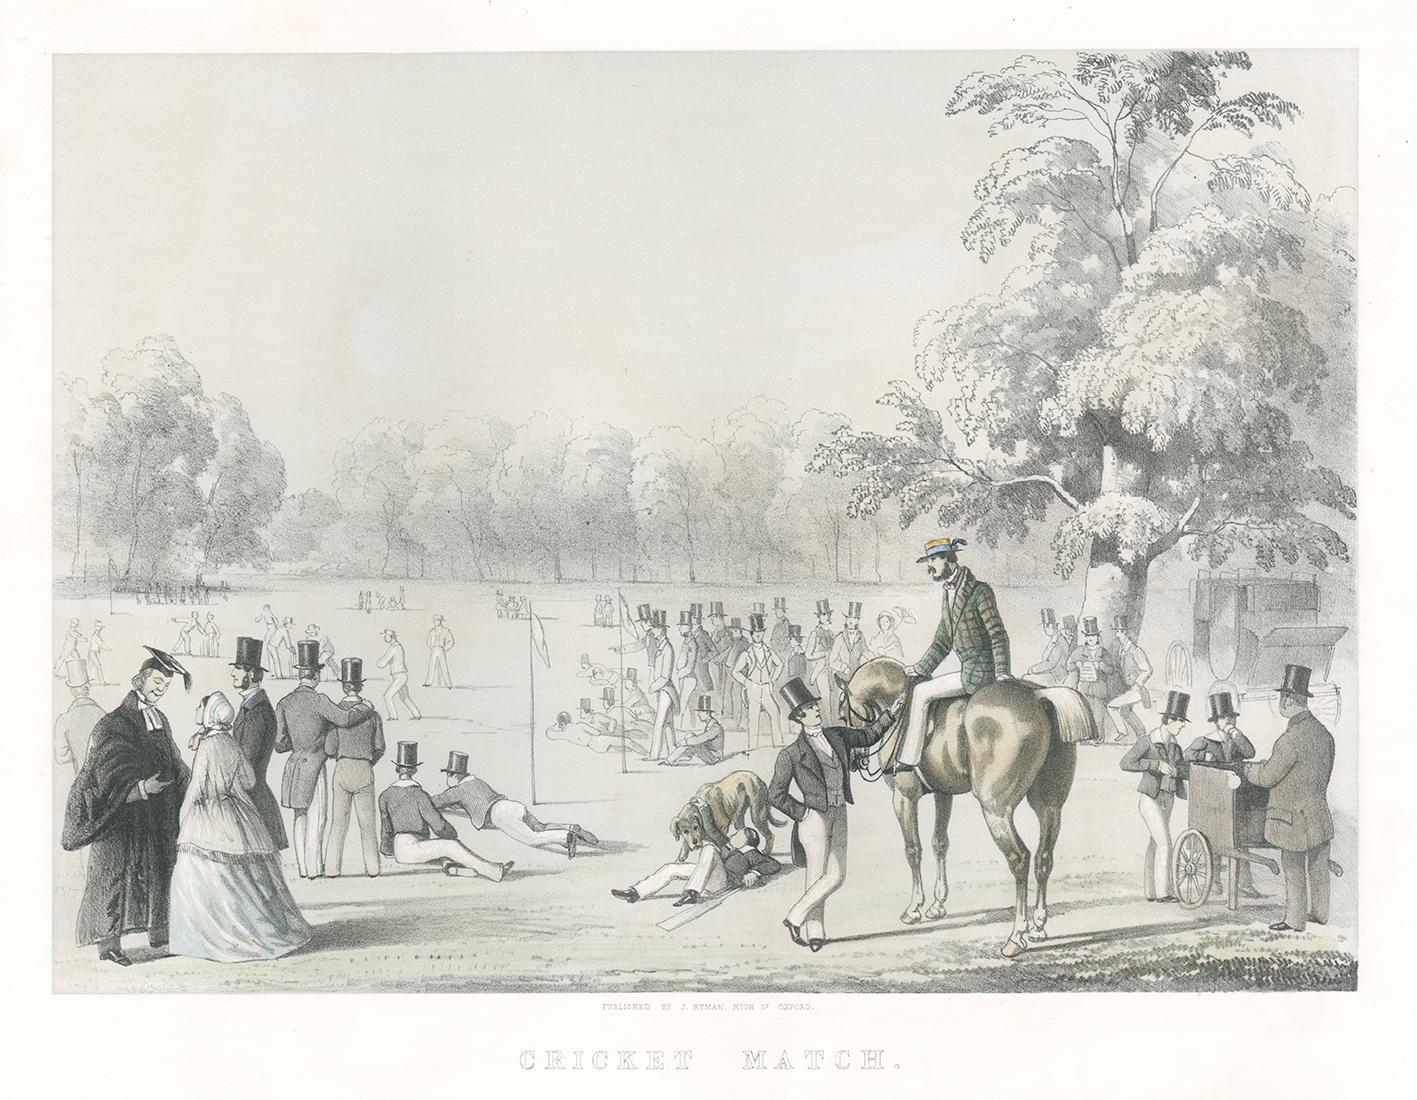 Cricket-Match, viktorianische englische Sportlithographie, um 1850